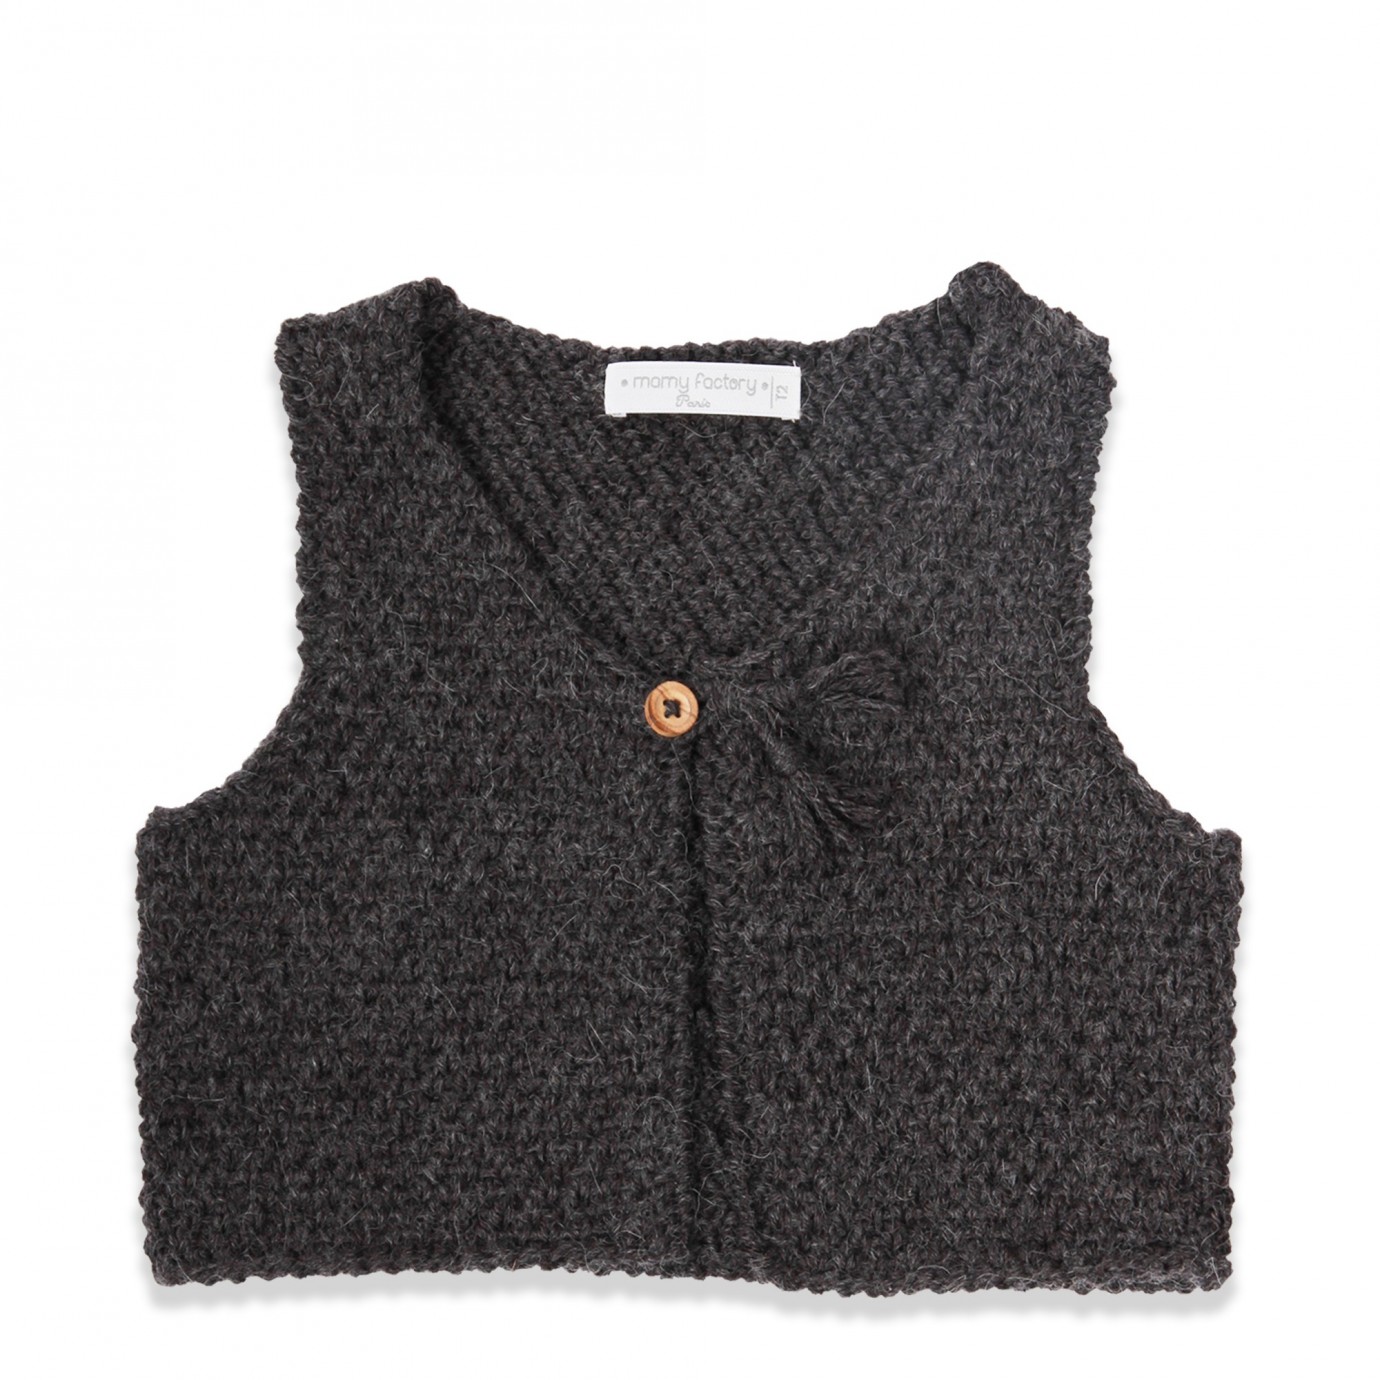 tricoter gilet sans manche bebe